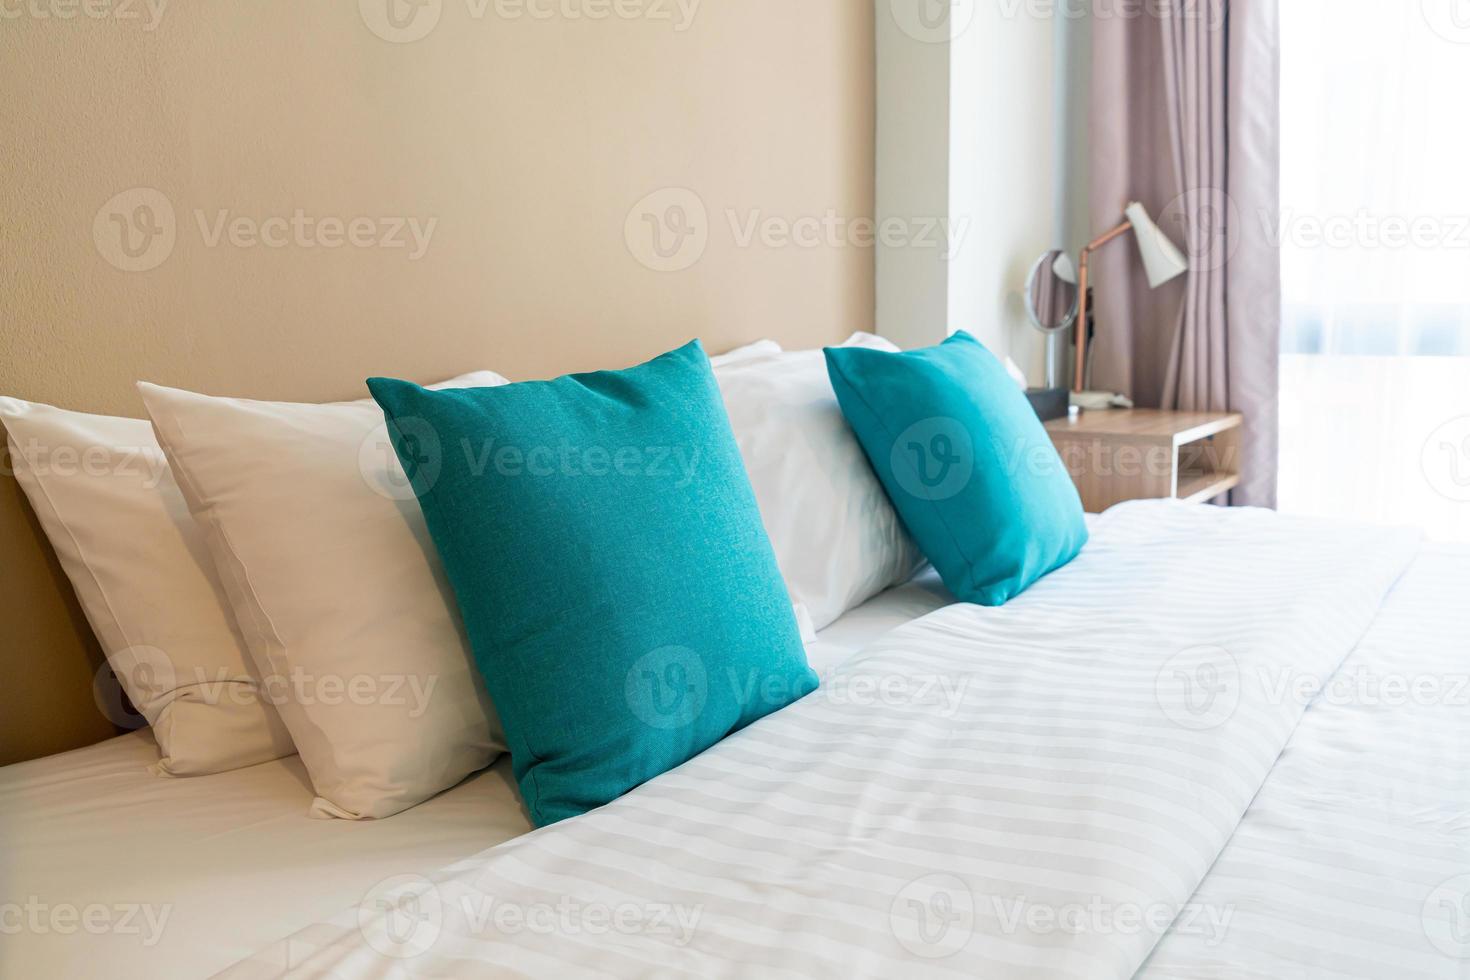 linda e confortável decoração de travesseiros na cama no quarto foto